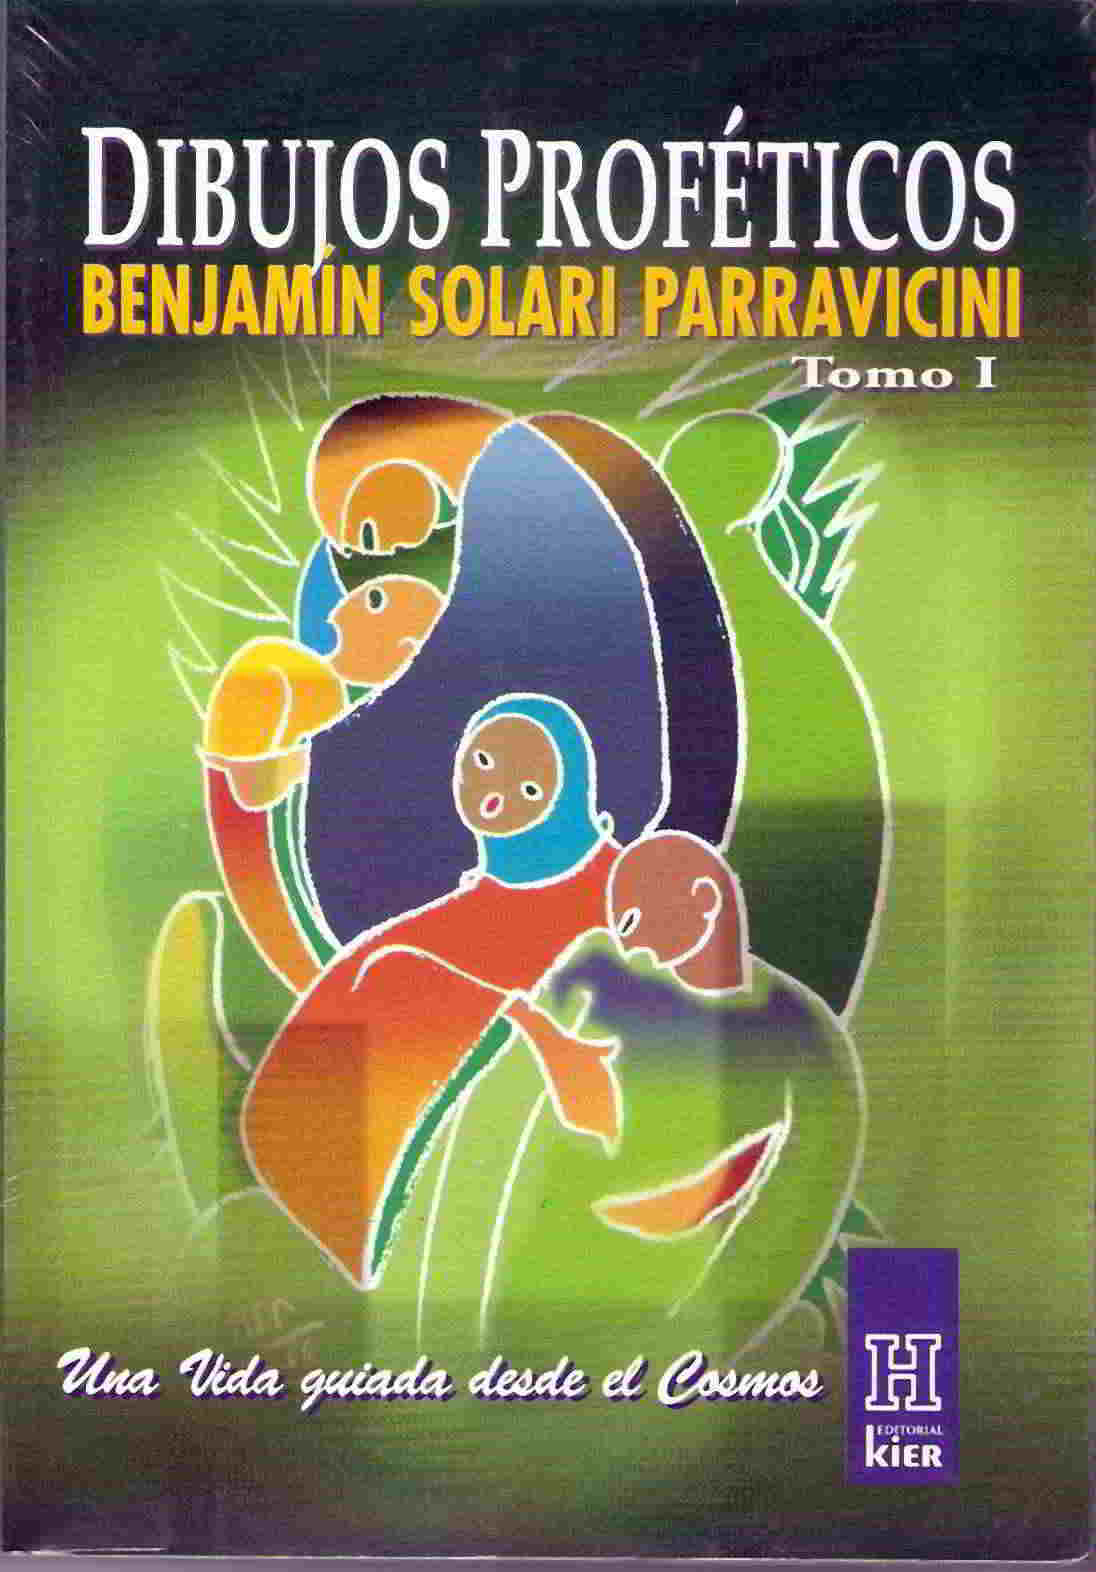 Benjamin Solari Parravicini, una vida guiada desde el cosmos